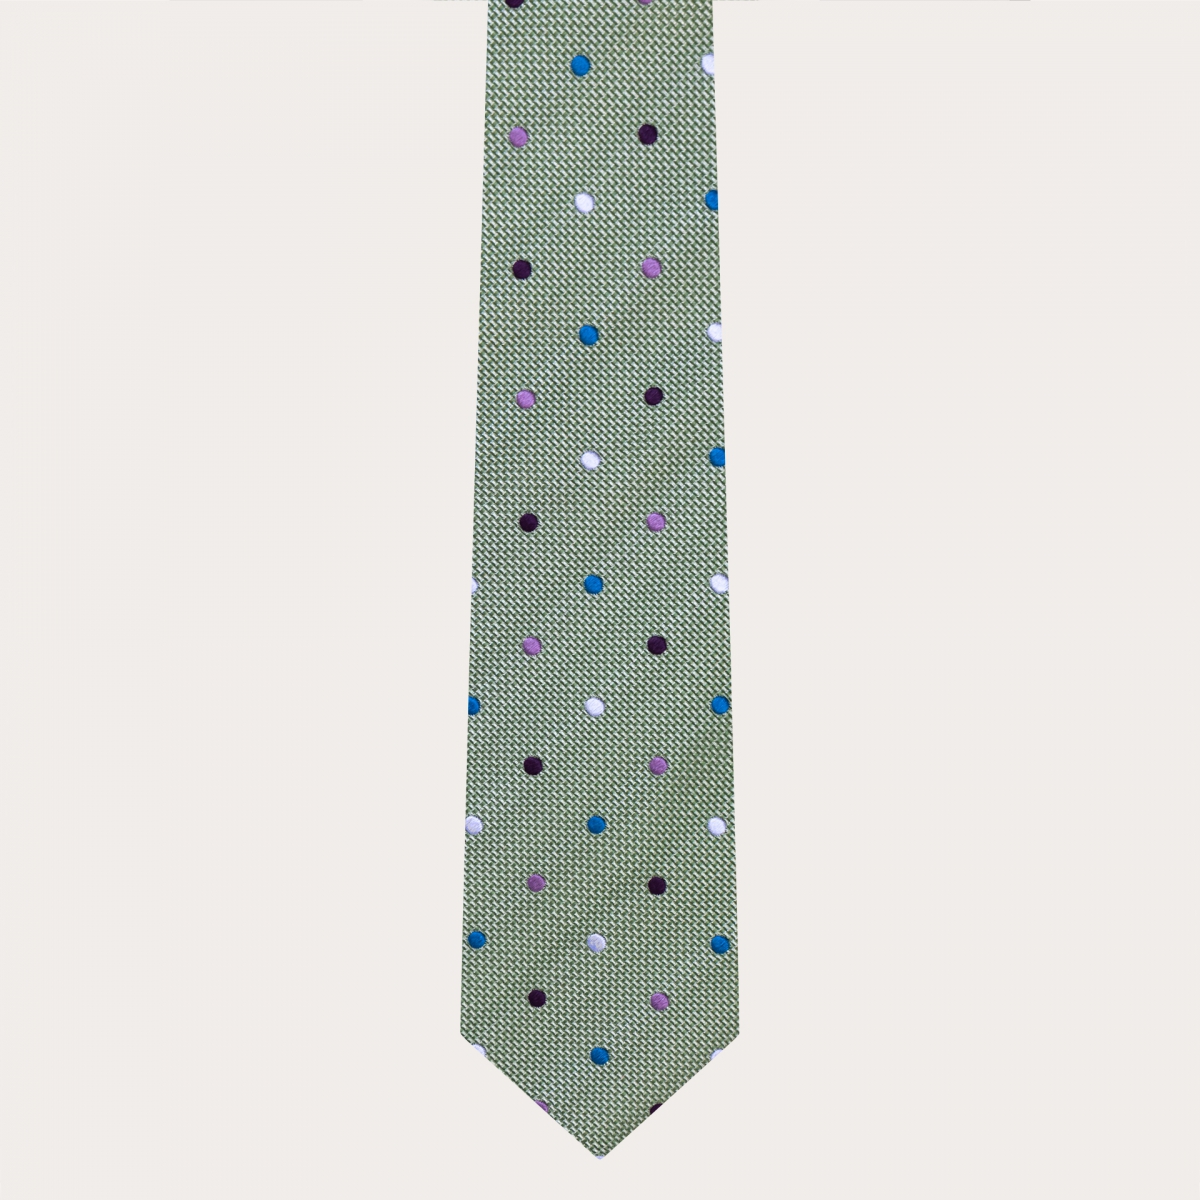 Cravate raffinée en jacquard de soie, vert à pois multicolores